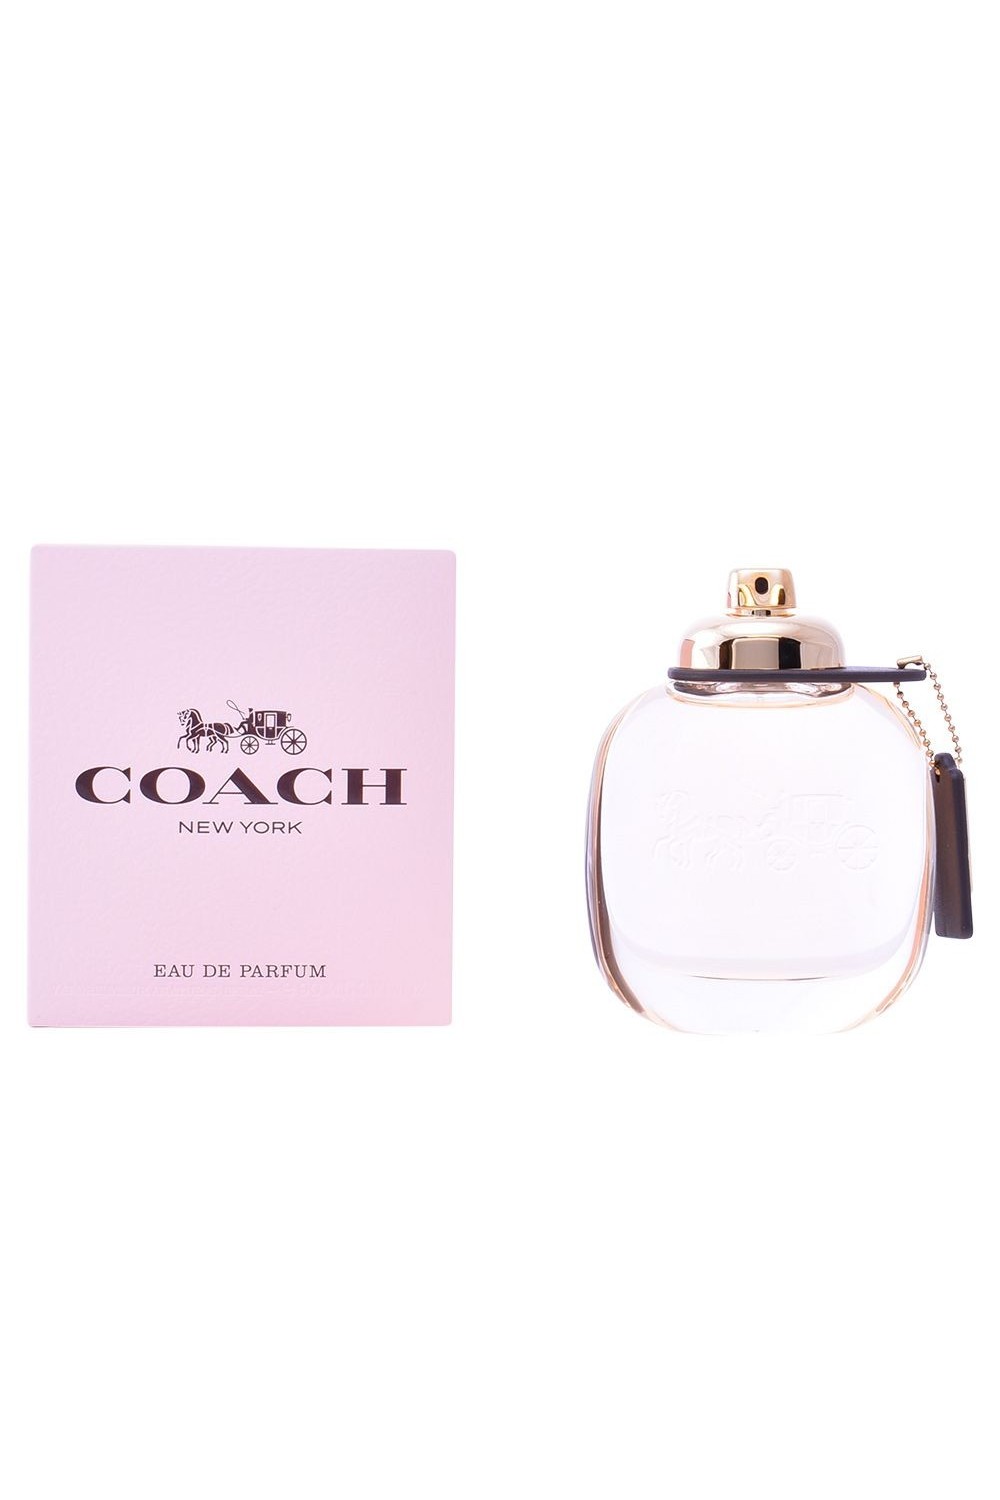 COACH 1941 - Coach New York Eau De Perfume Spray 90ml